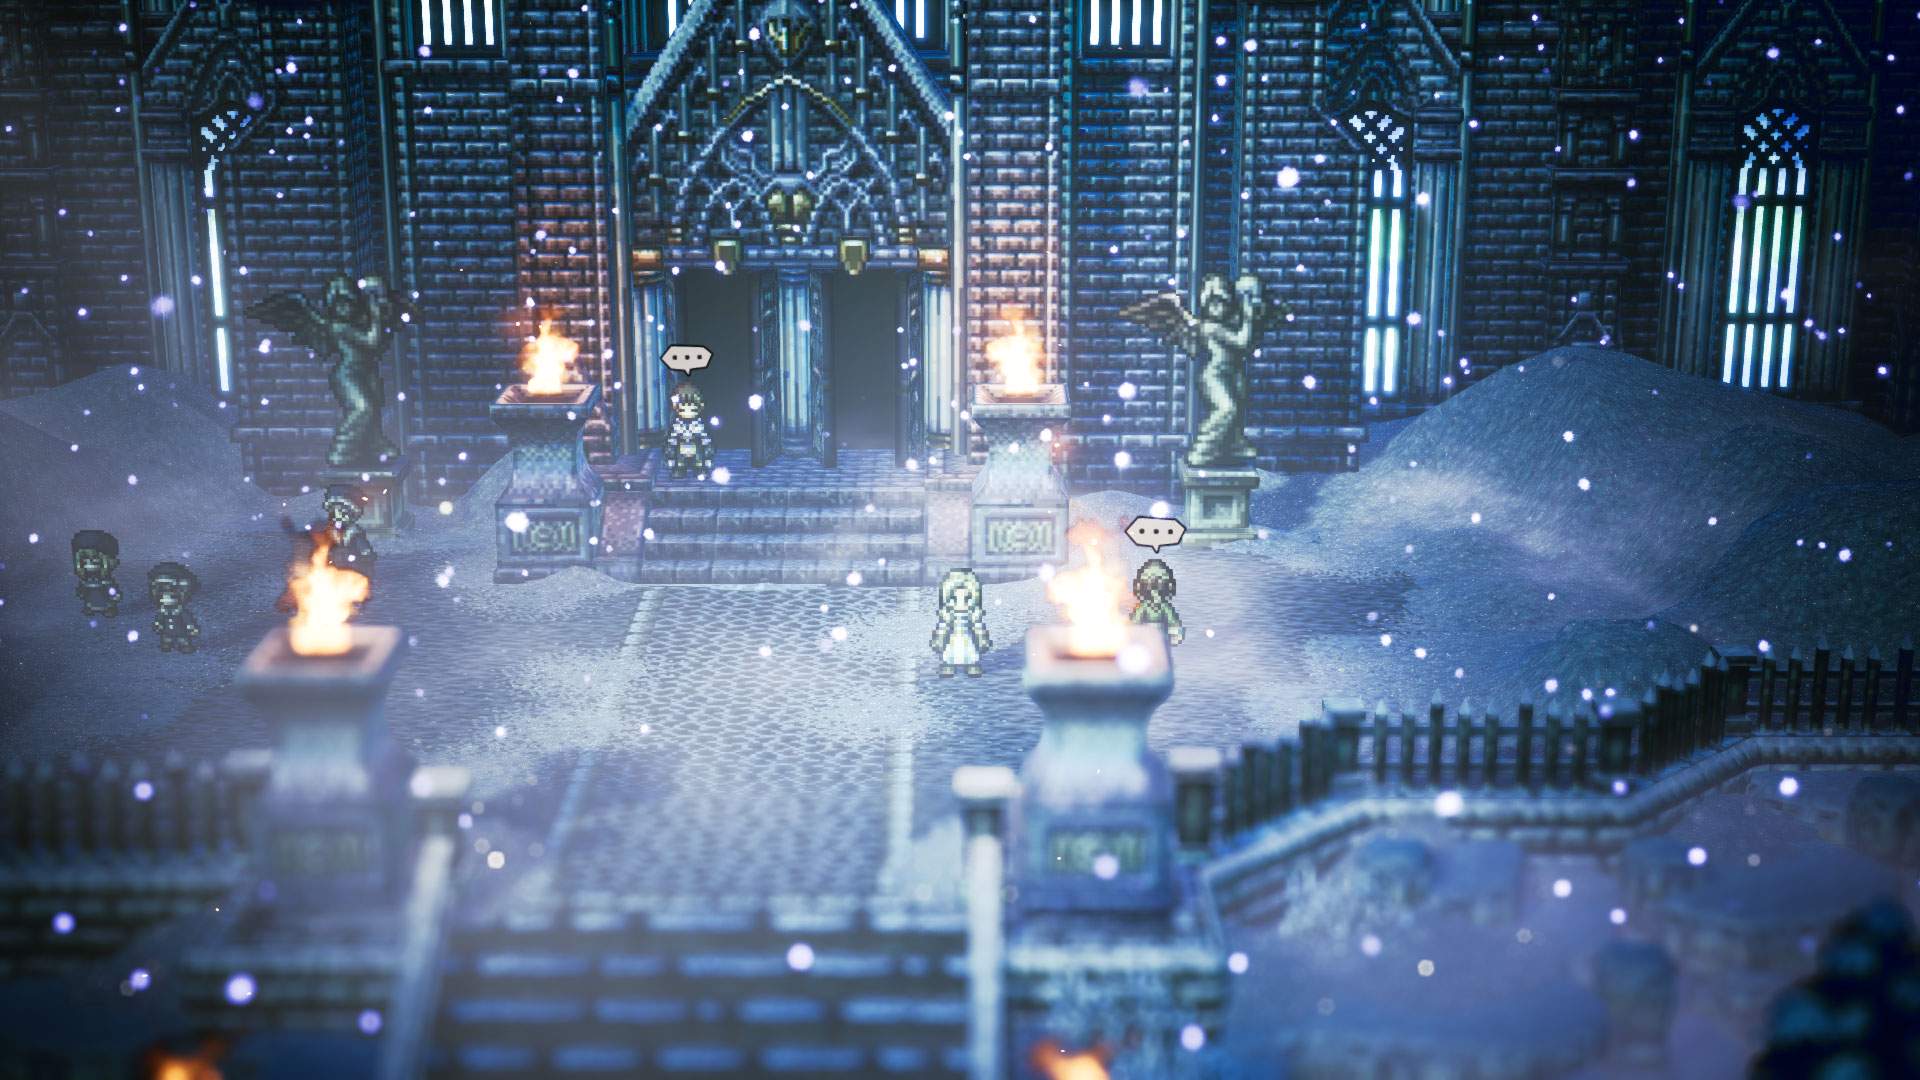 Capture d'écran montrant Ophilia devant un vaste manoir, en ville, sous la neige.